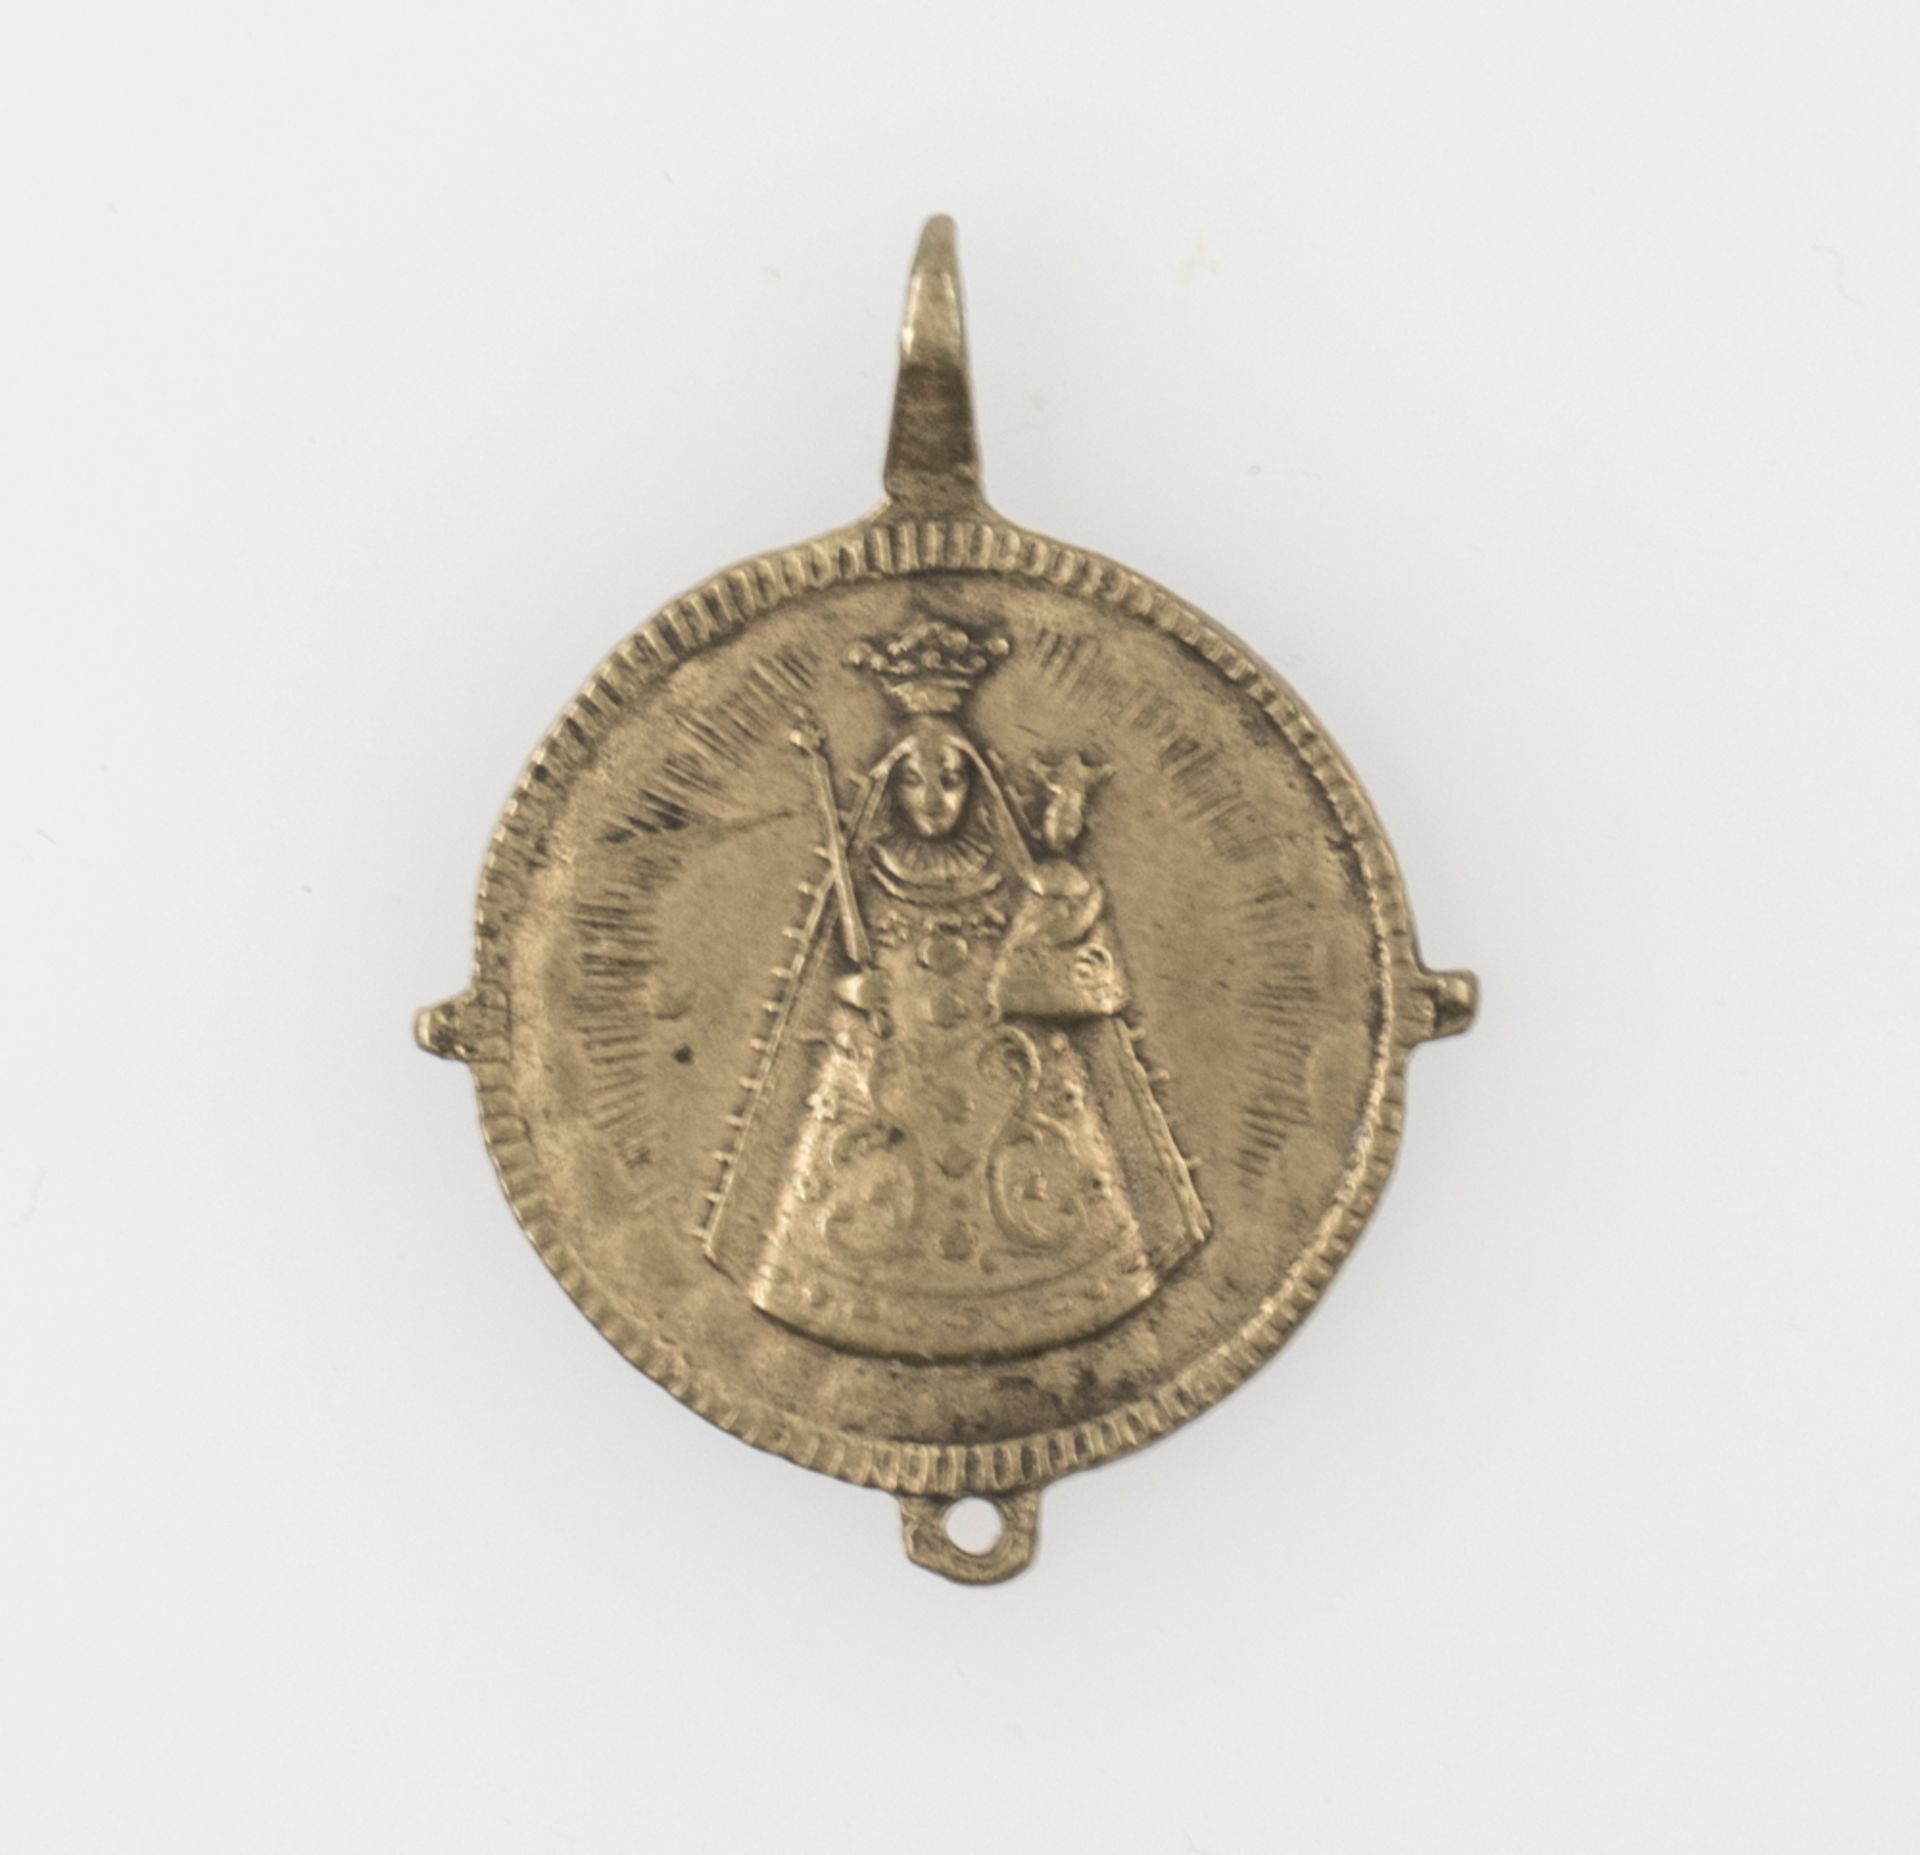 Tragbare christliche Medaille, Erzengel Michael, Rv. Hl. Maria. Durchmesser: ca. 27 mm. - Bild 2 aus 2